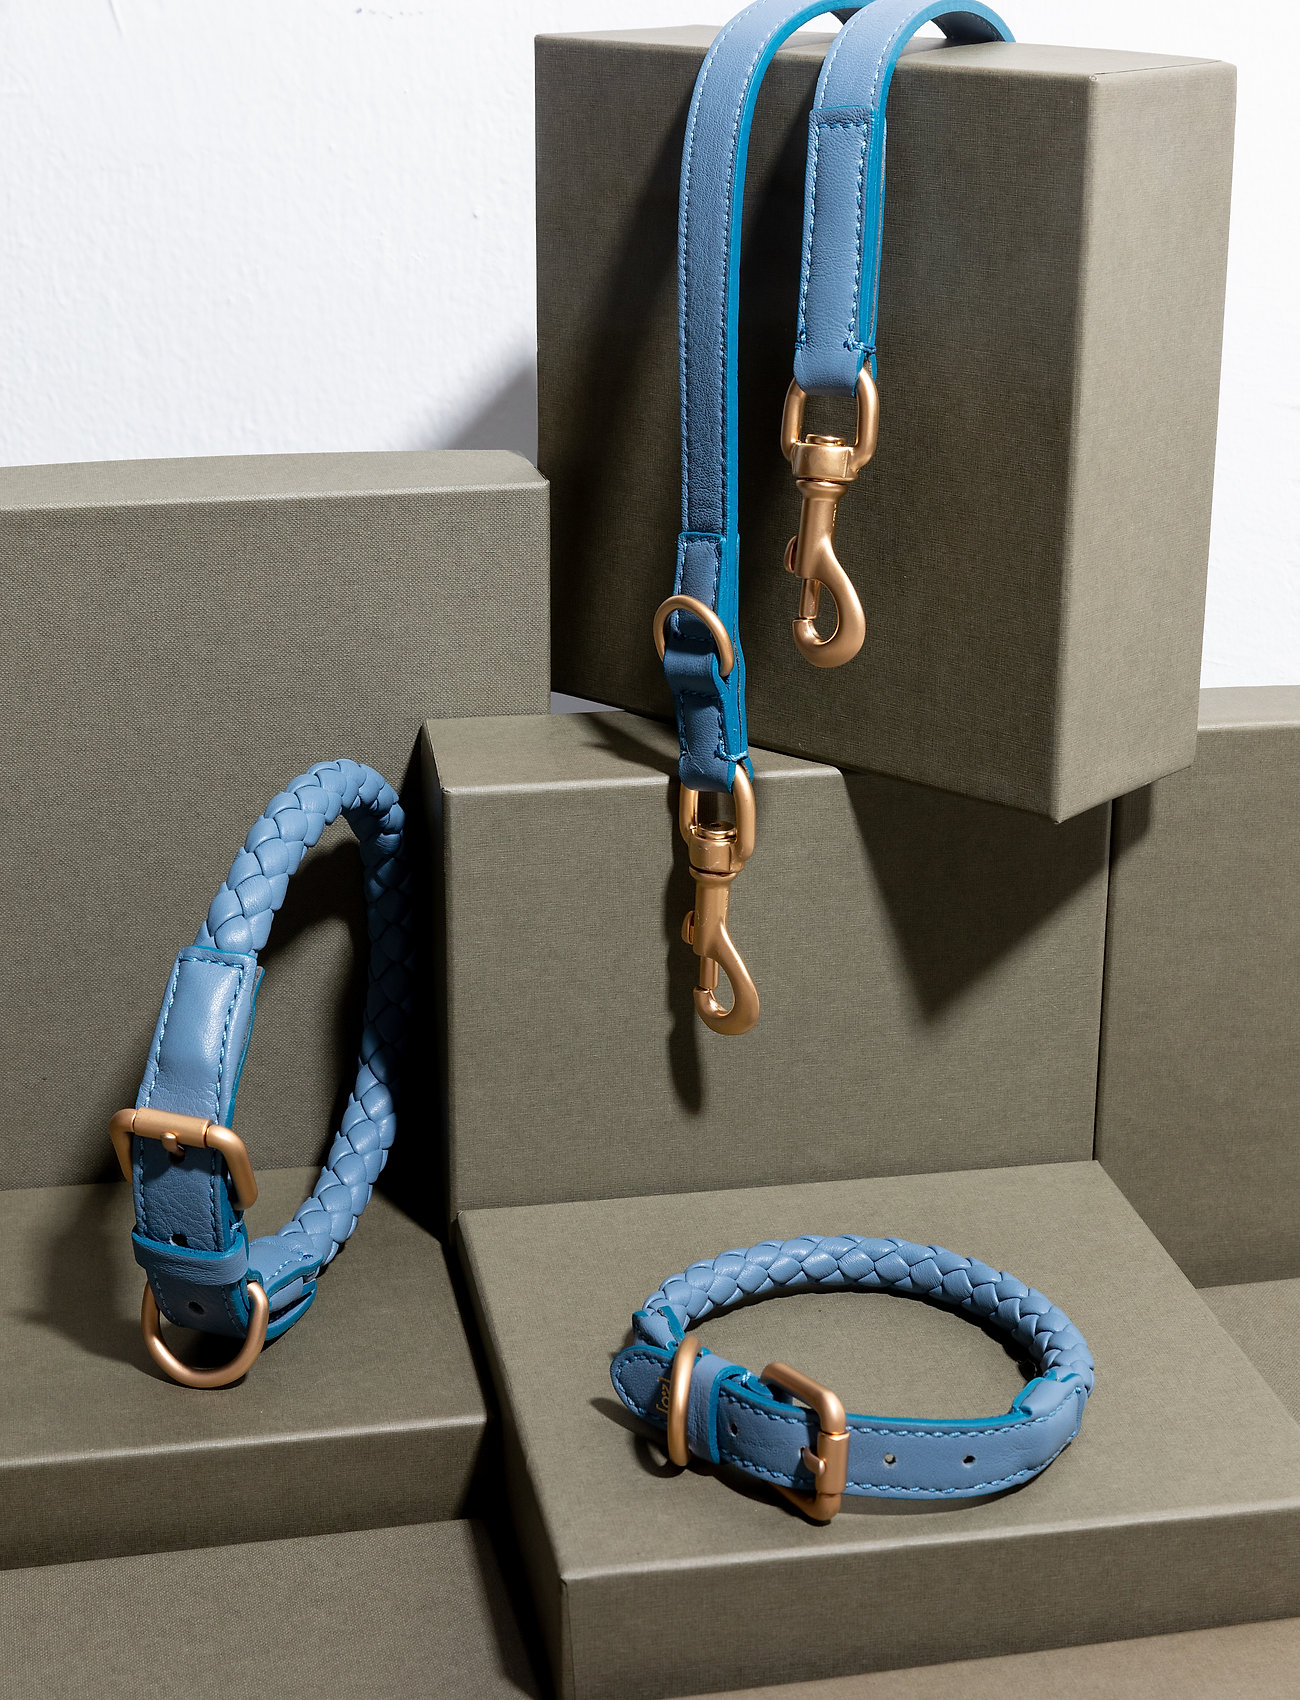 2.8 Design for Dogs - FERDINANDO LEASH - hundeleinen - dusty blue - 1